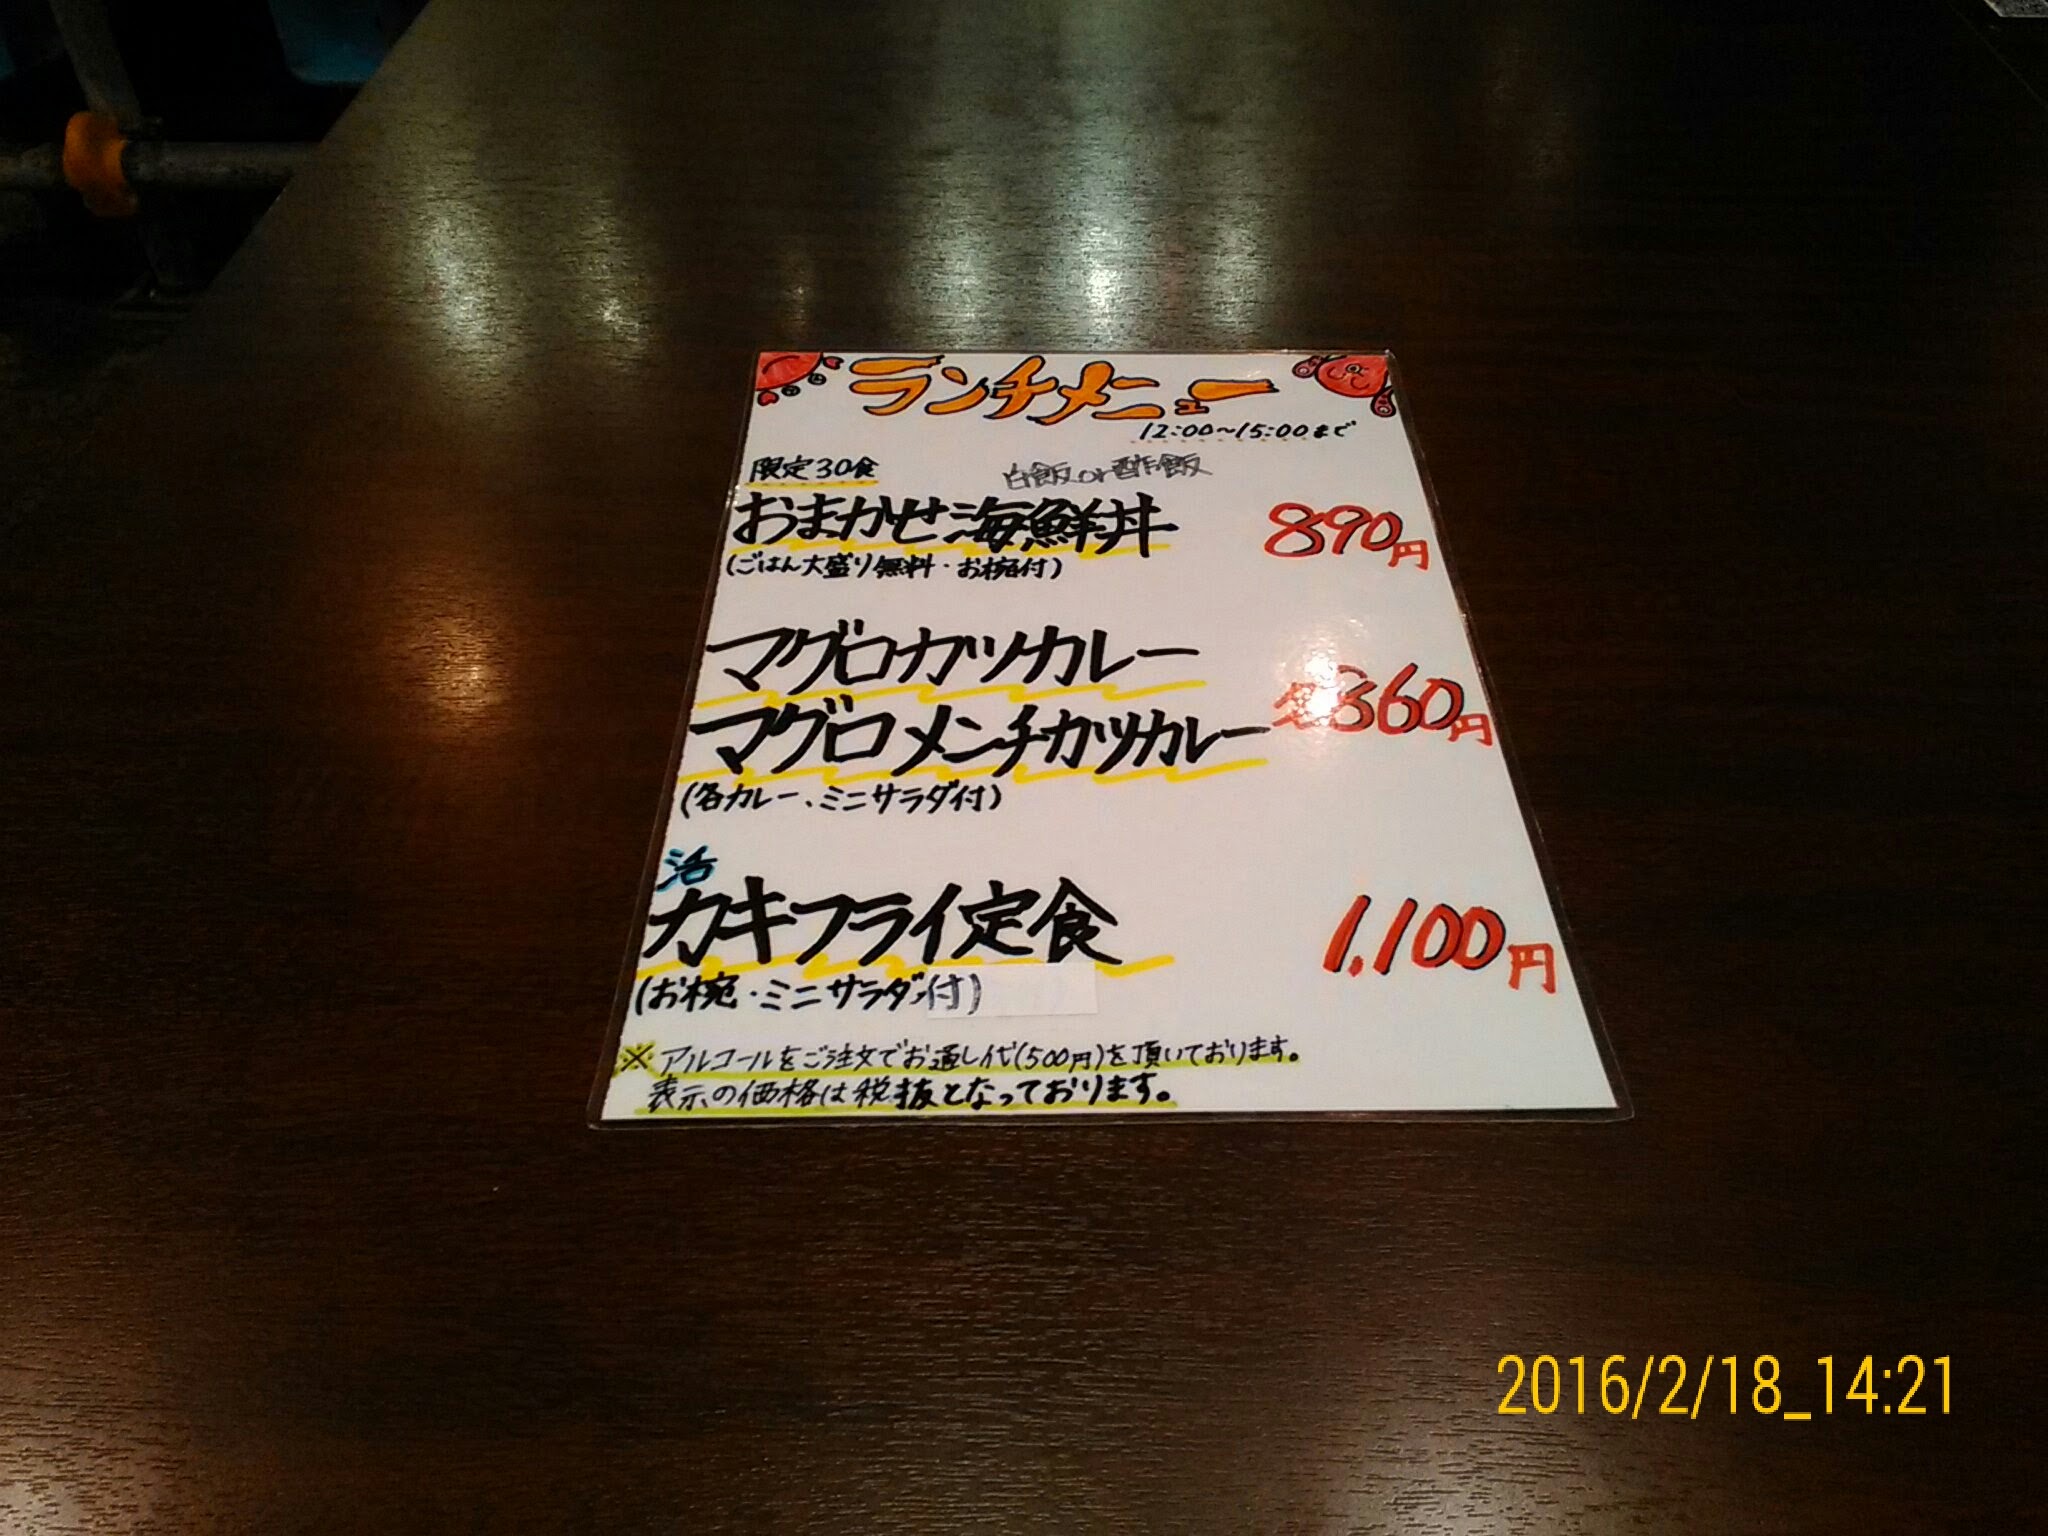 【大森】ランチの海鮮丼がお得な函館市場 海女房